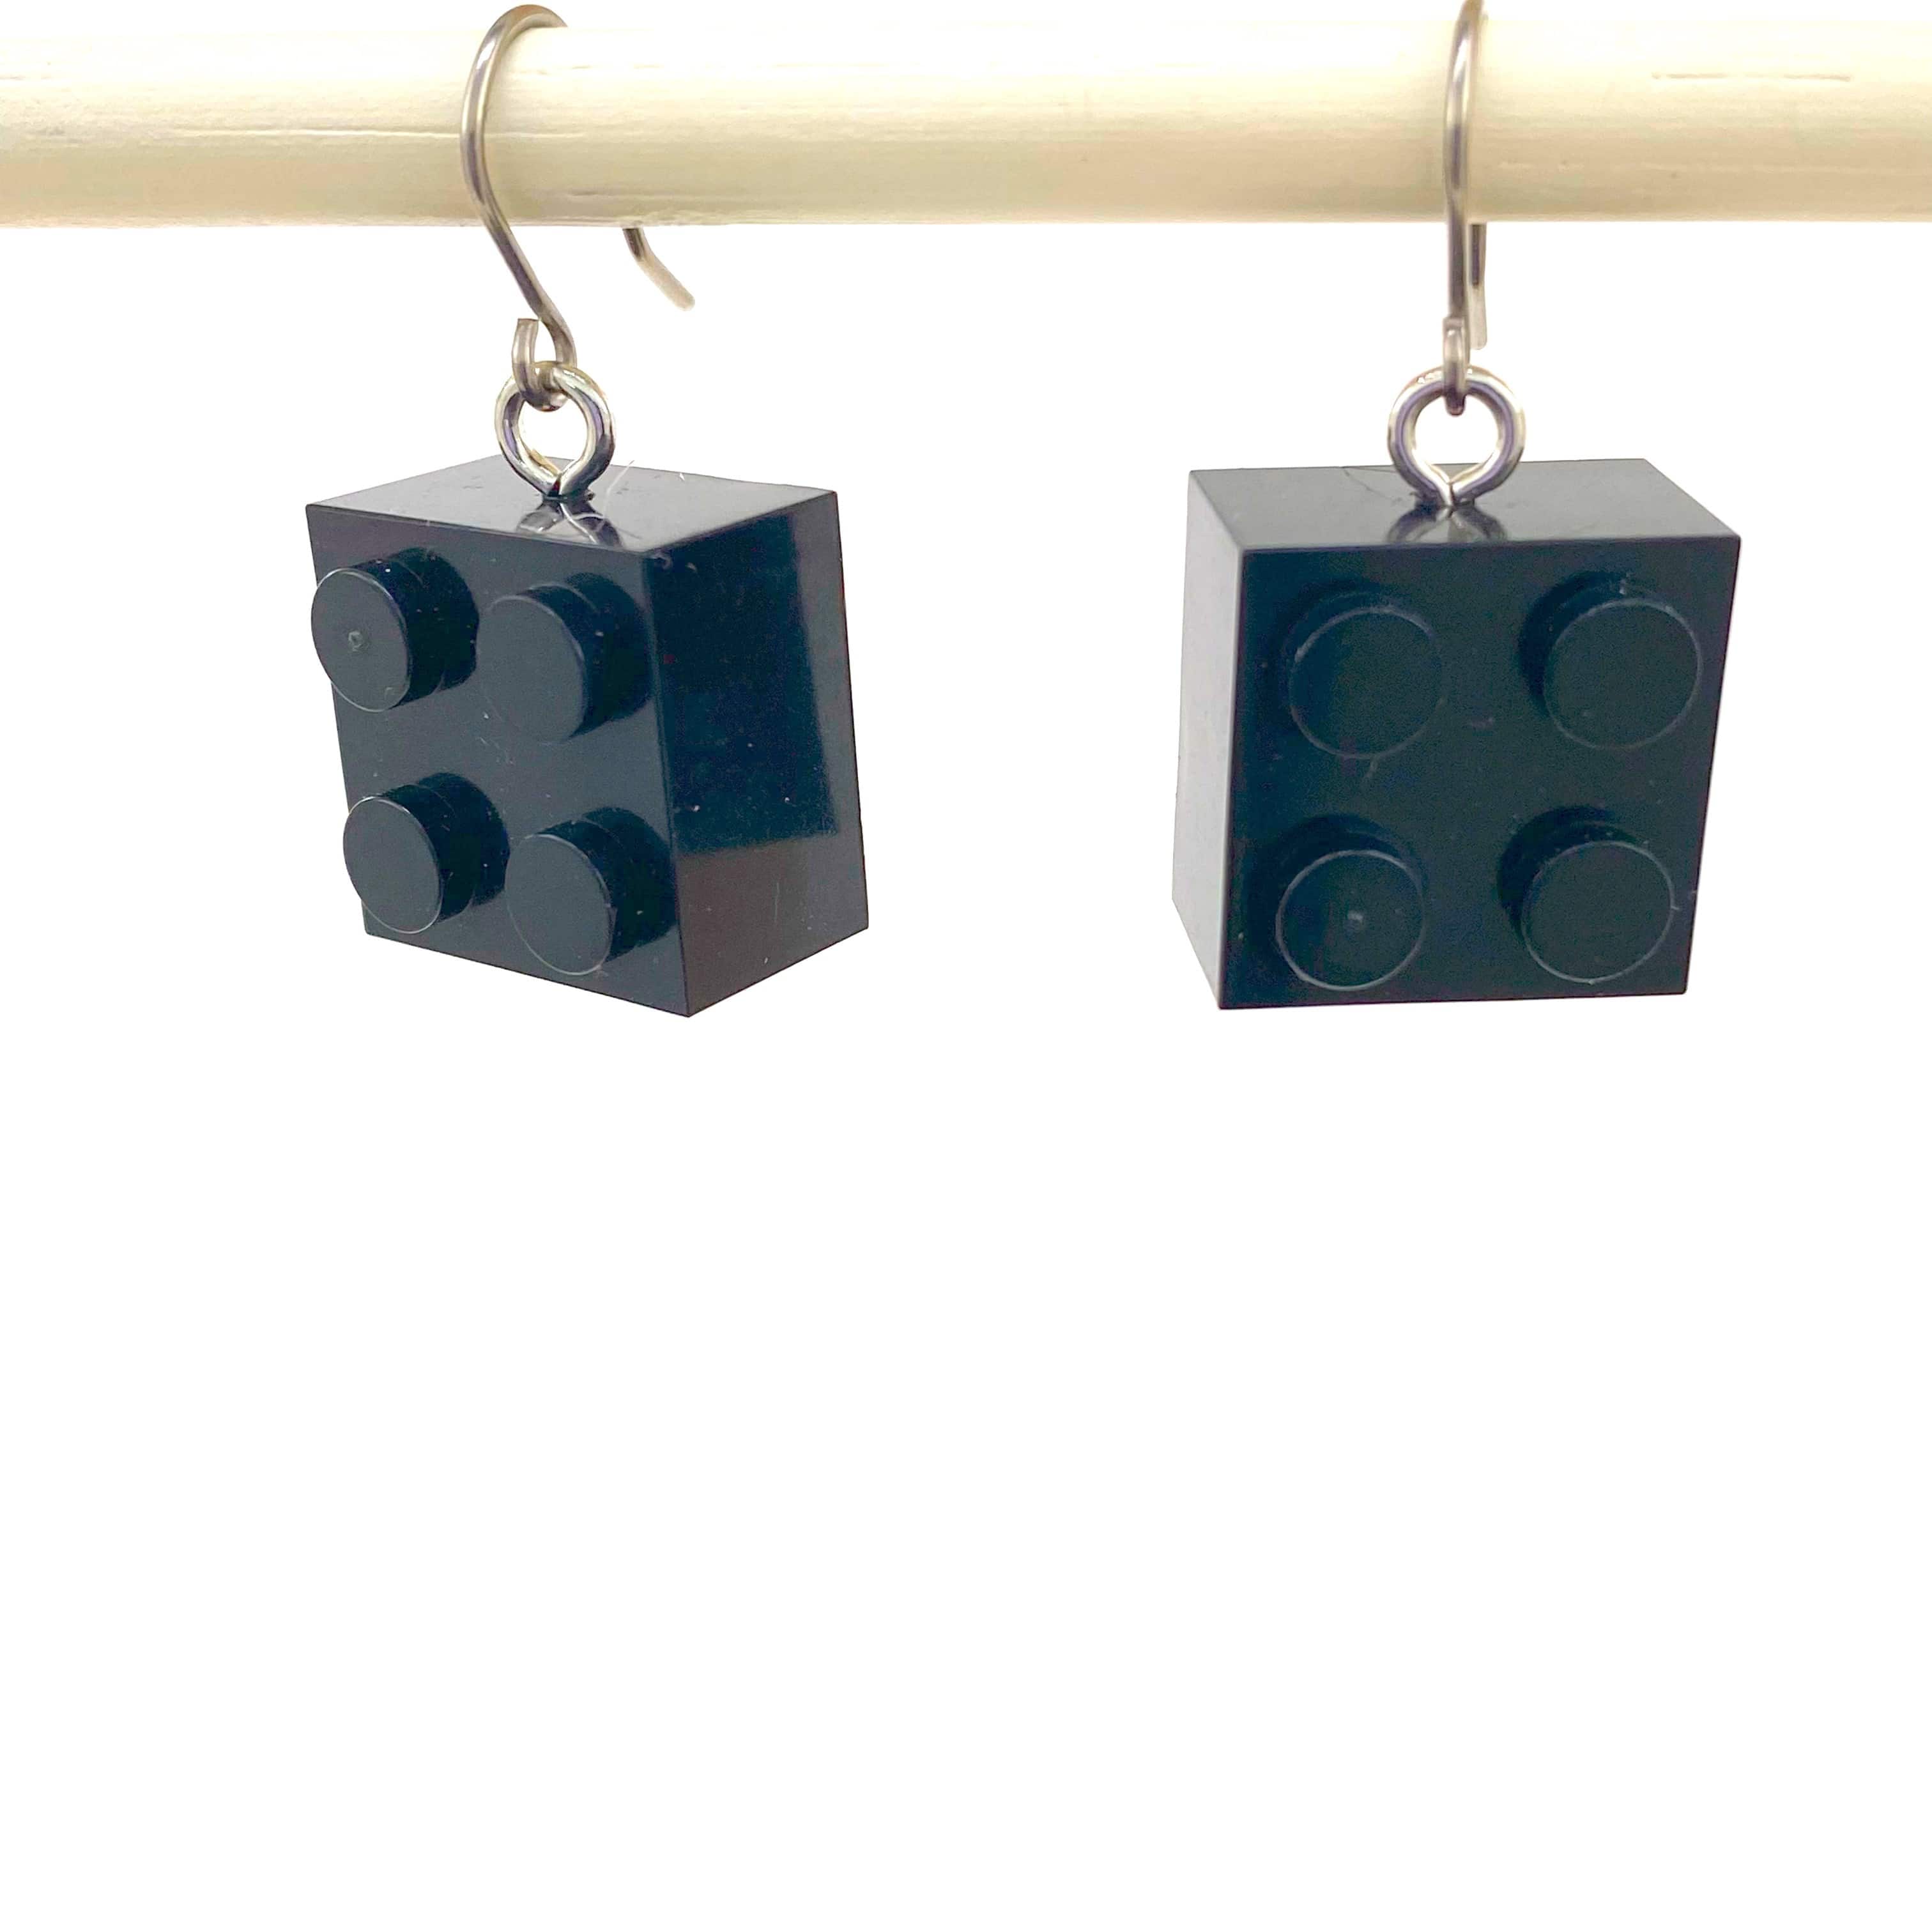 Lego block earrings